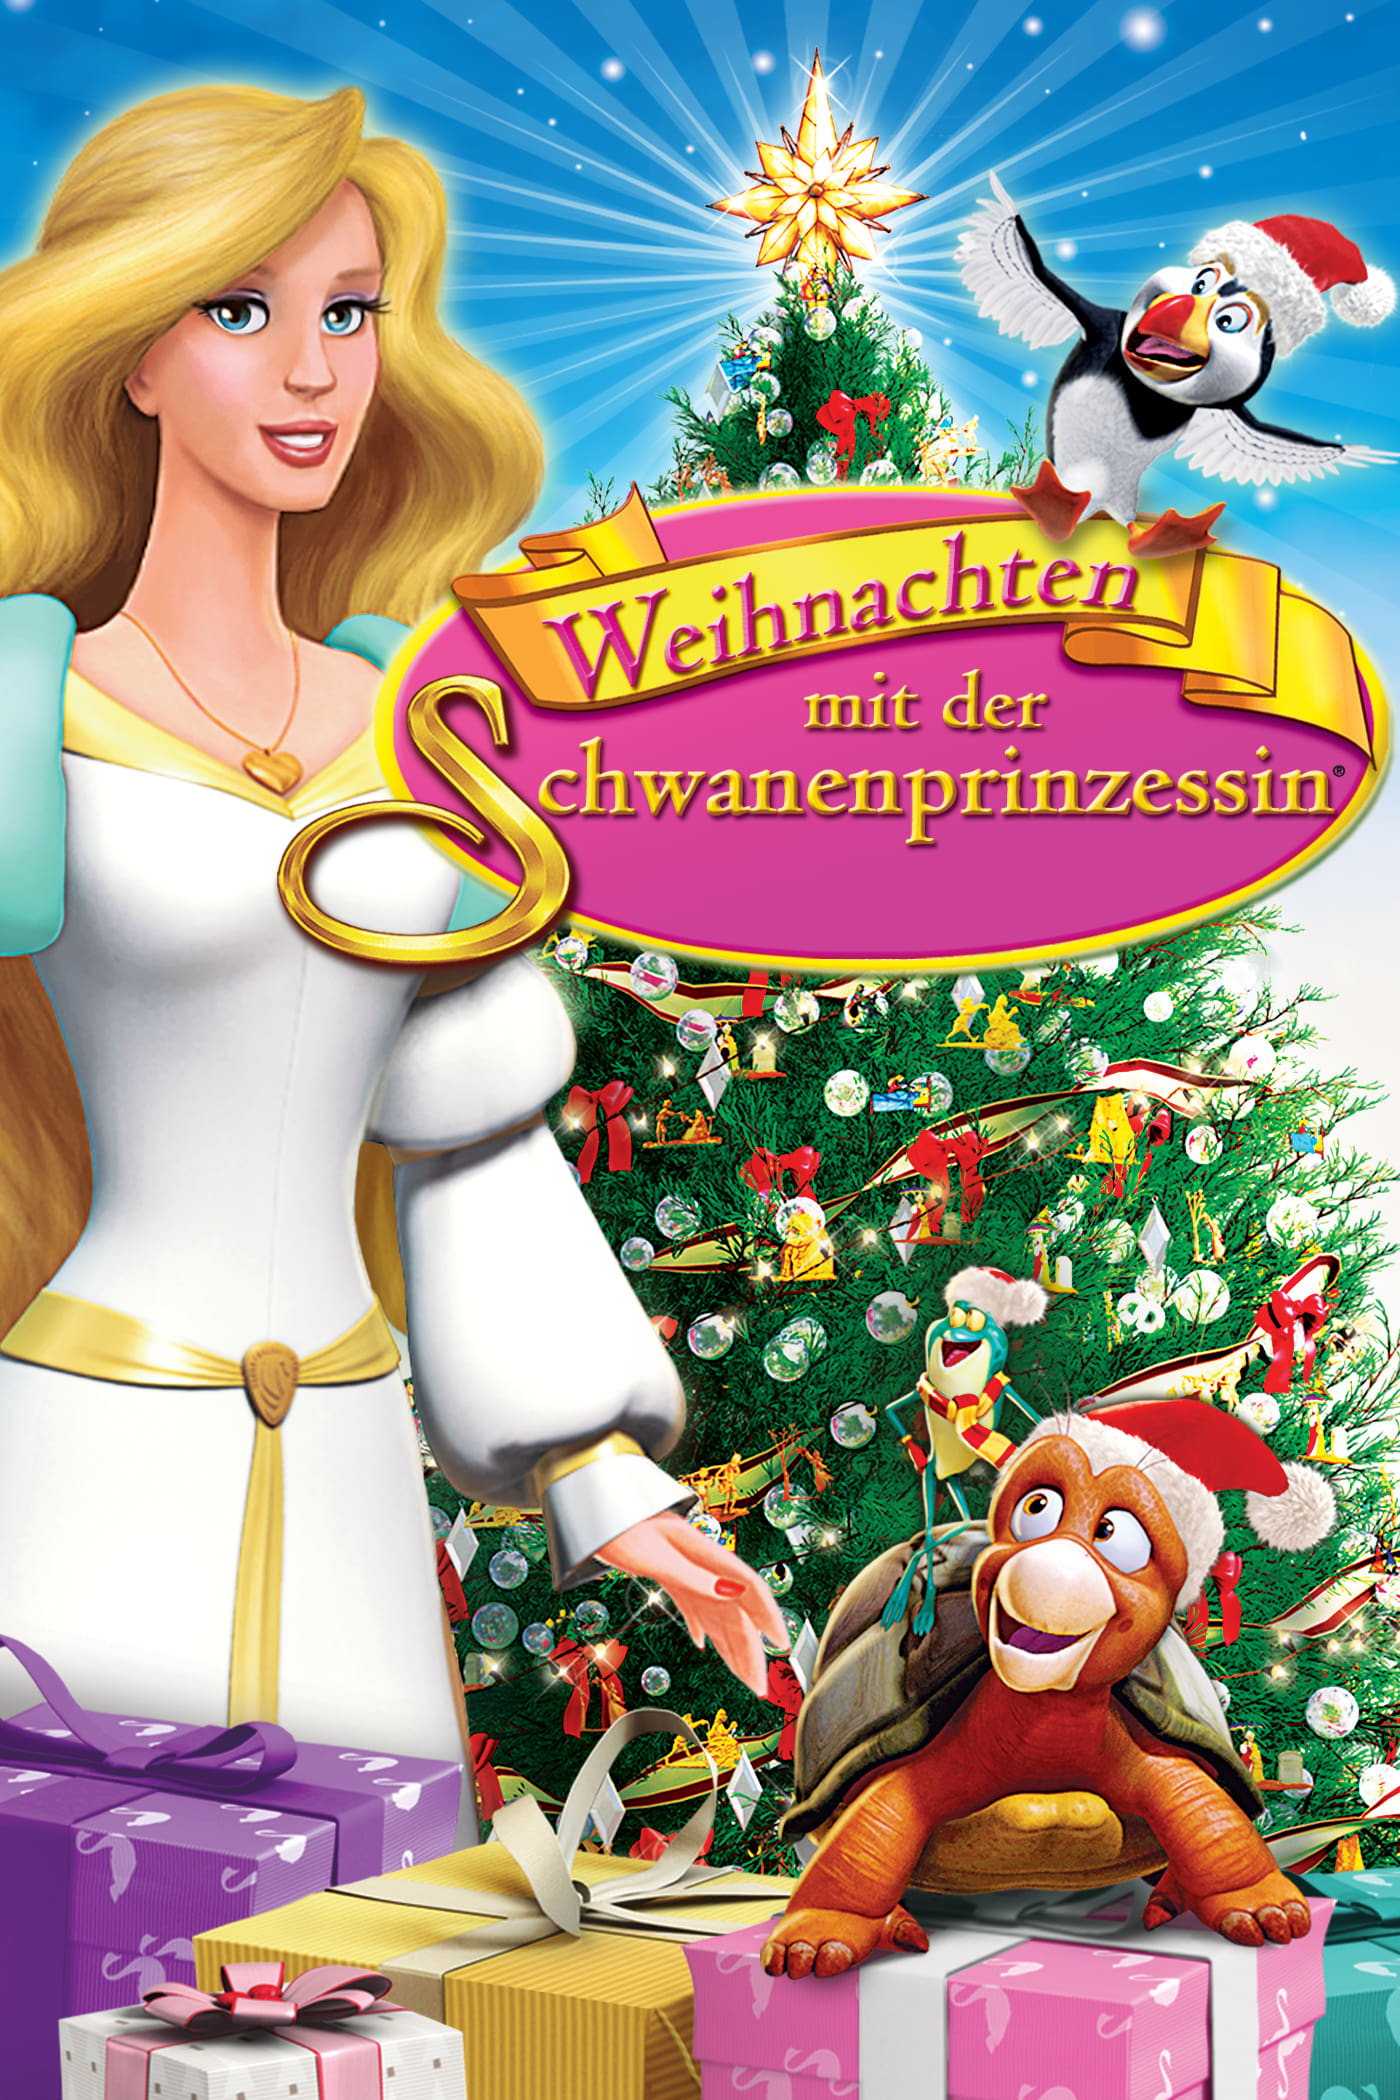 Plakat von "Weihnachten mit der Schwanenprinzessin"